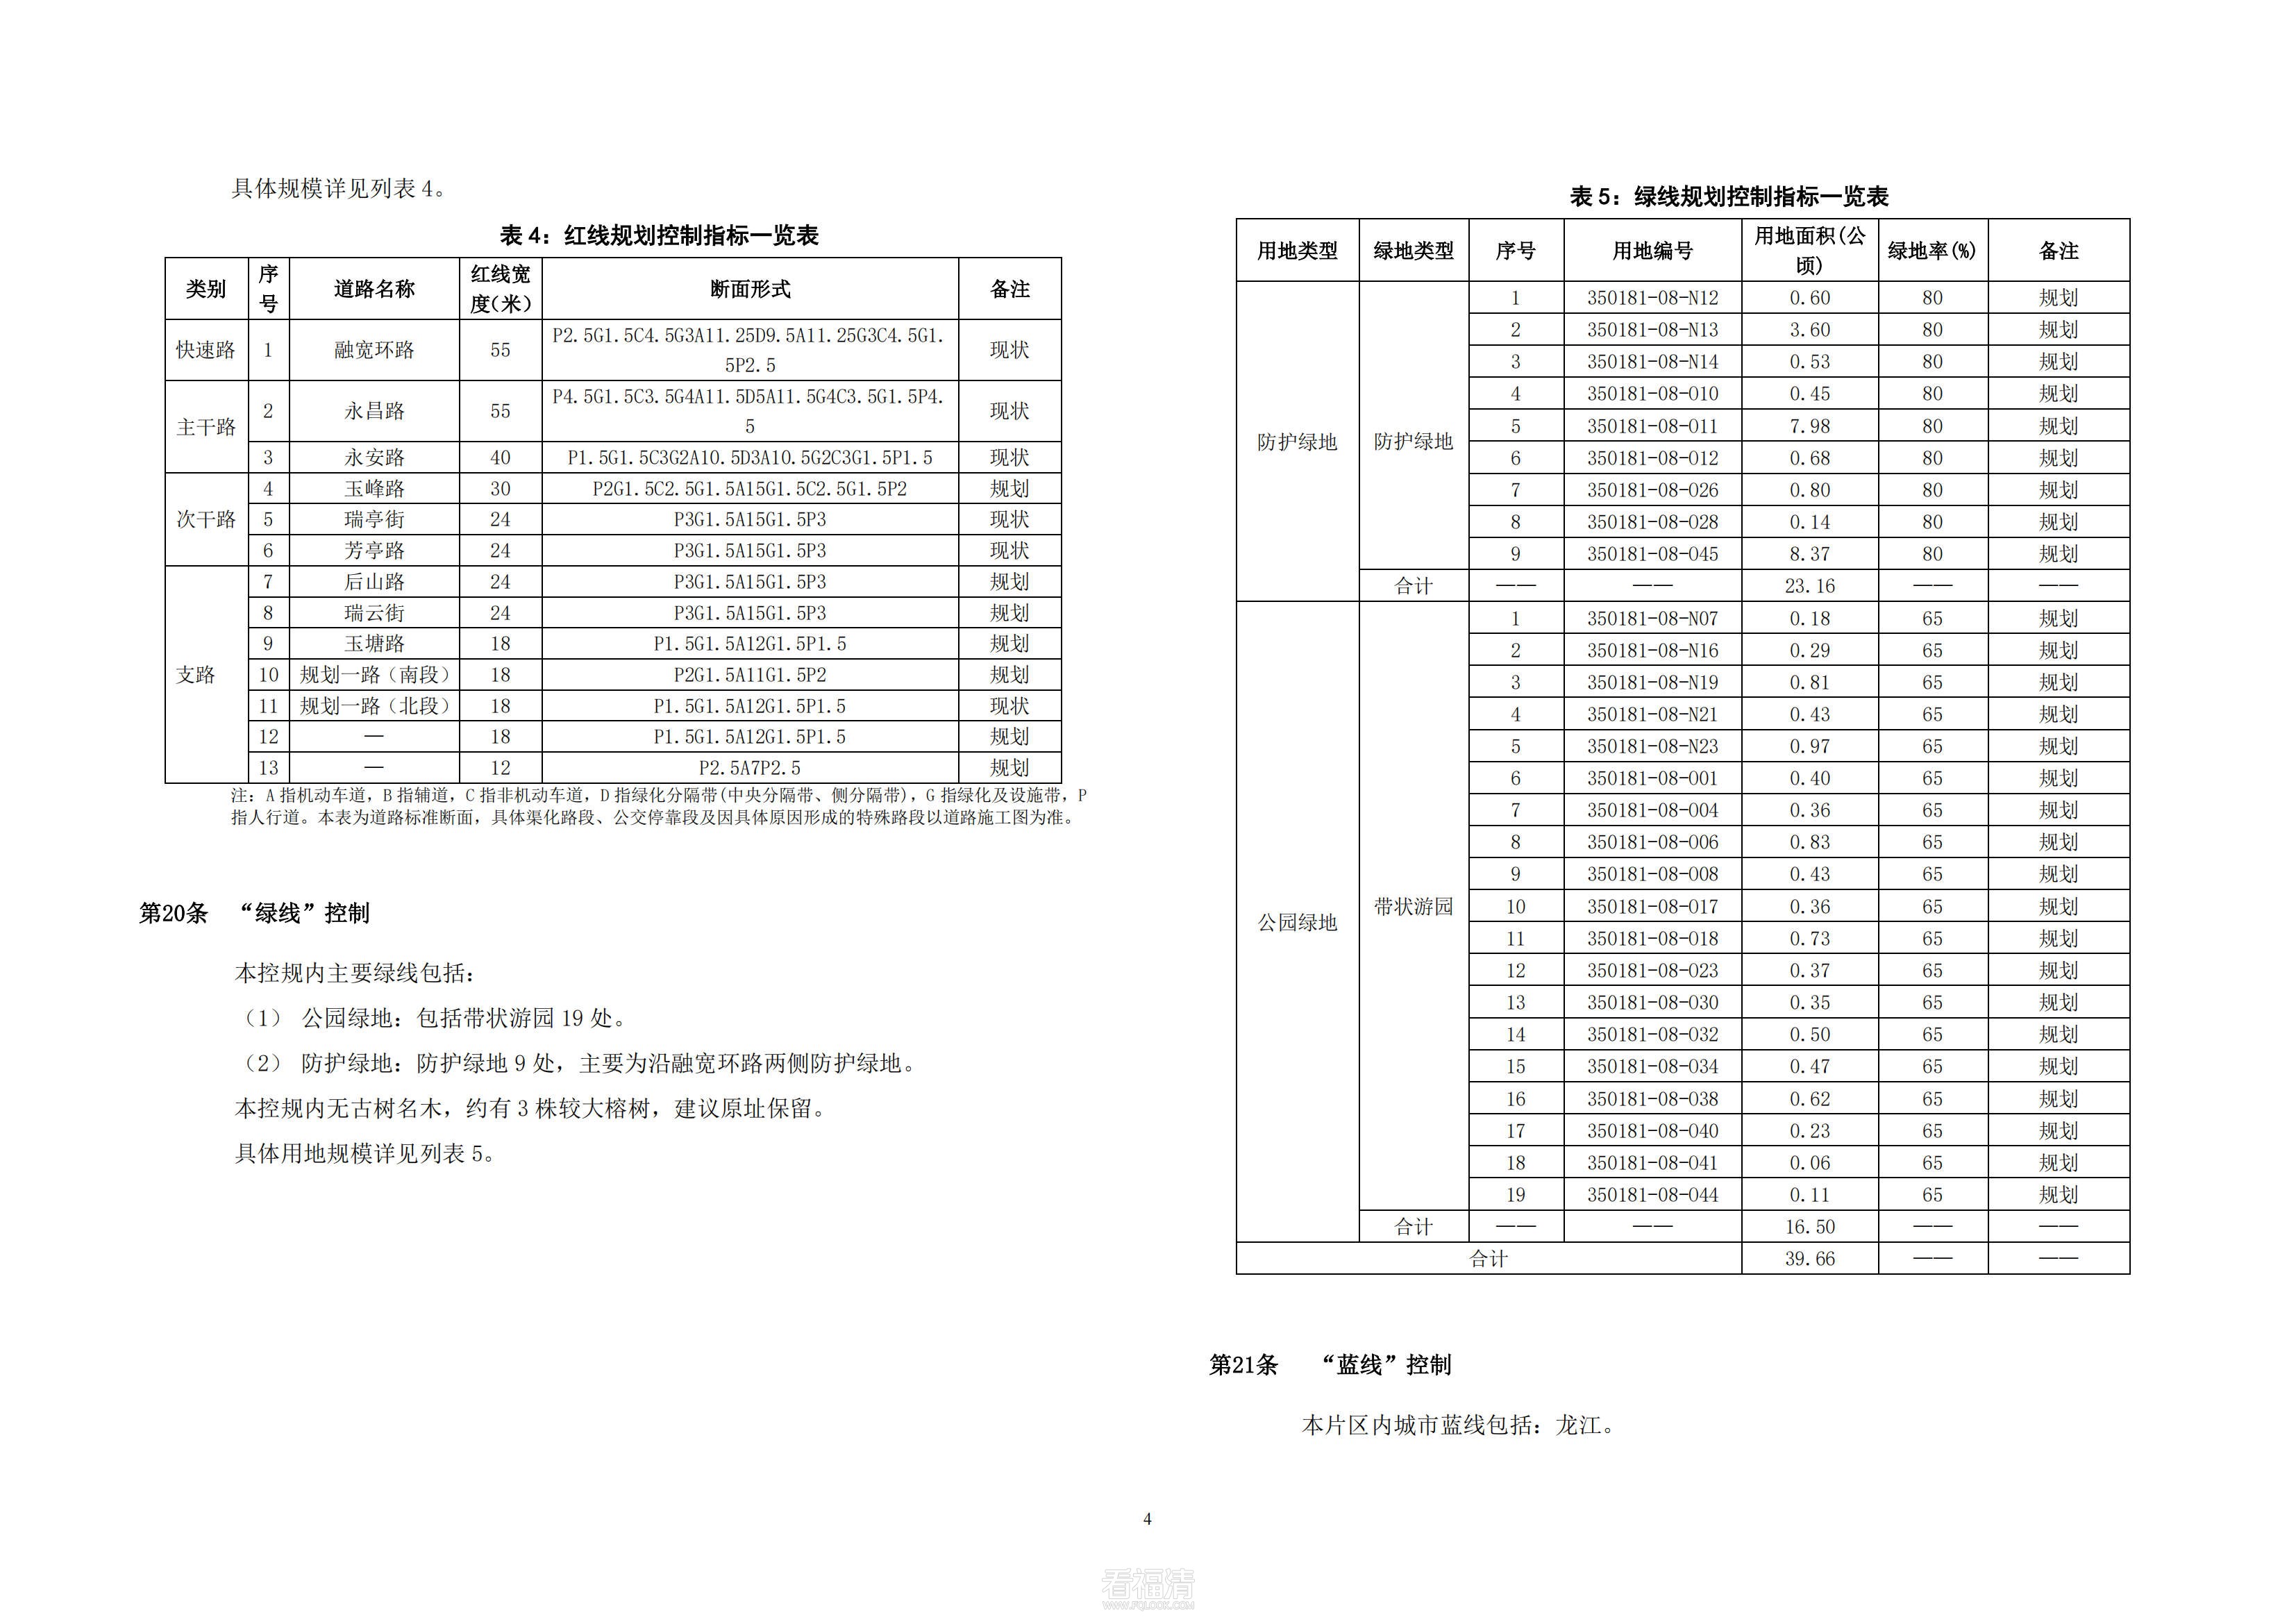 福清市中心城区基本单元350181-08-N、350181-08-O控制性详细规划修编_08.jpg